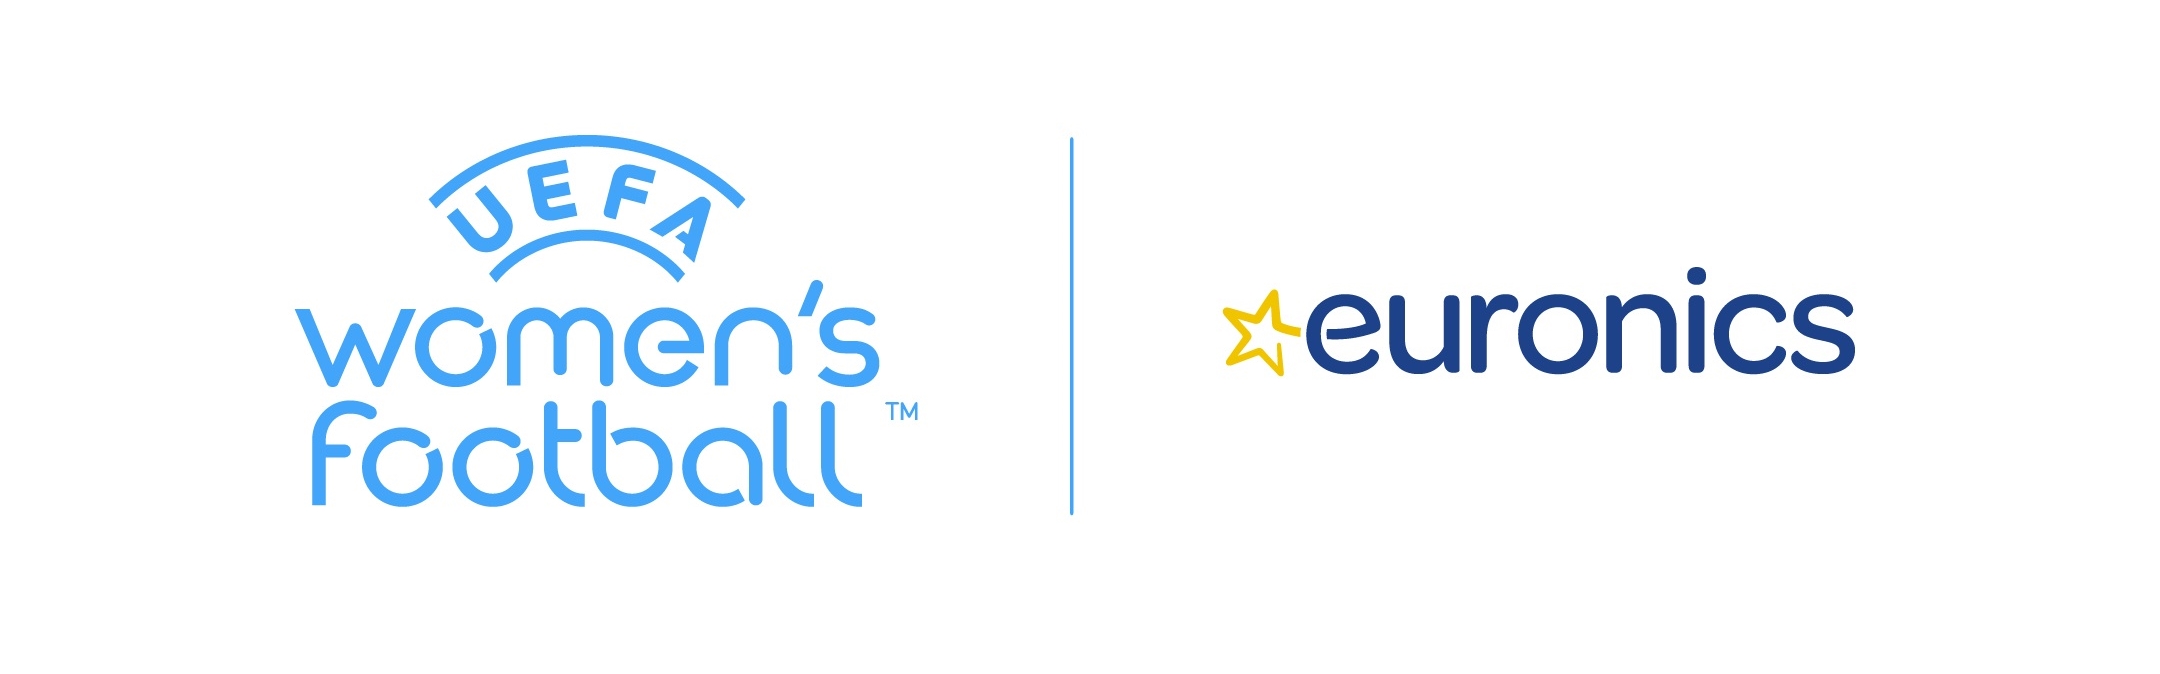 UEFA and Euronics Partnership Logos